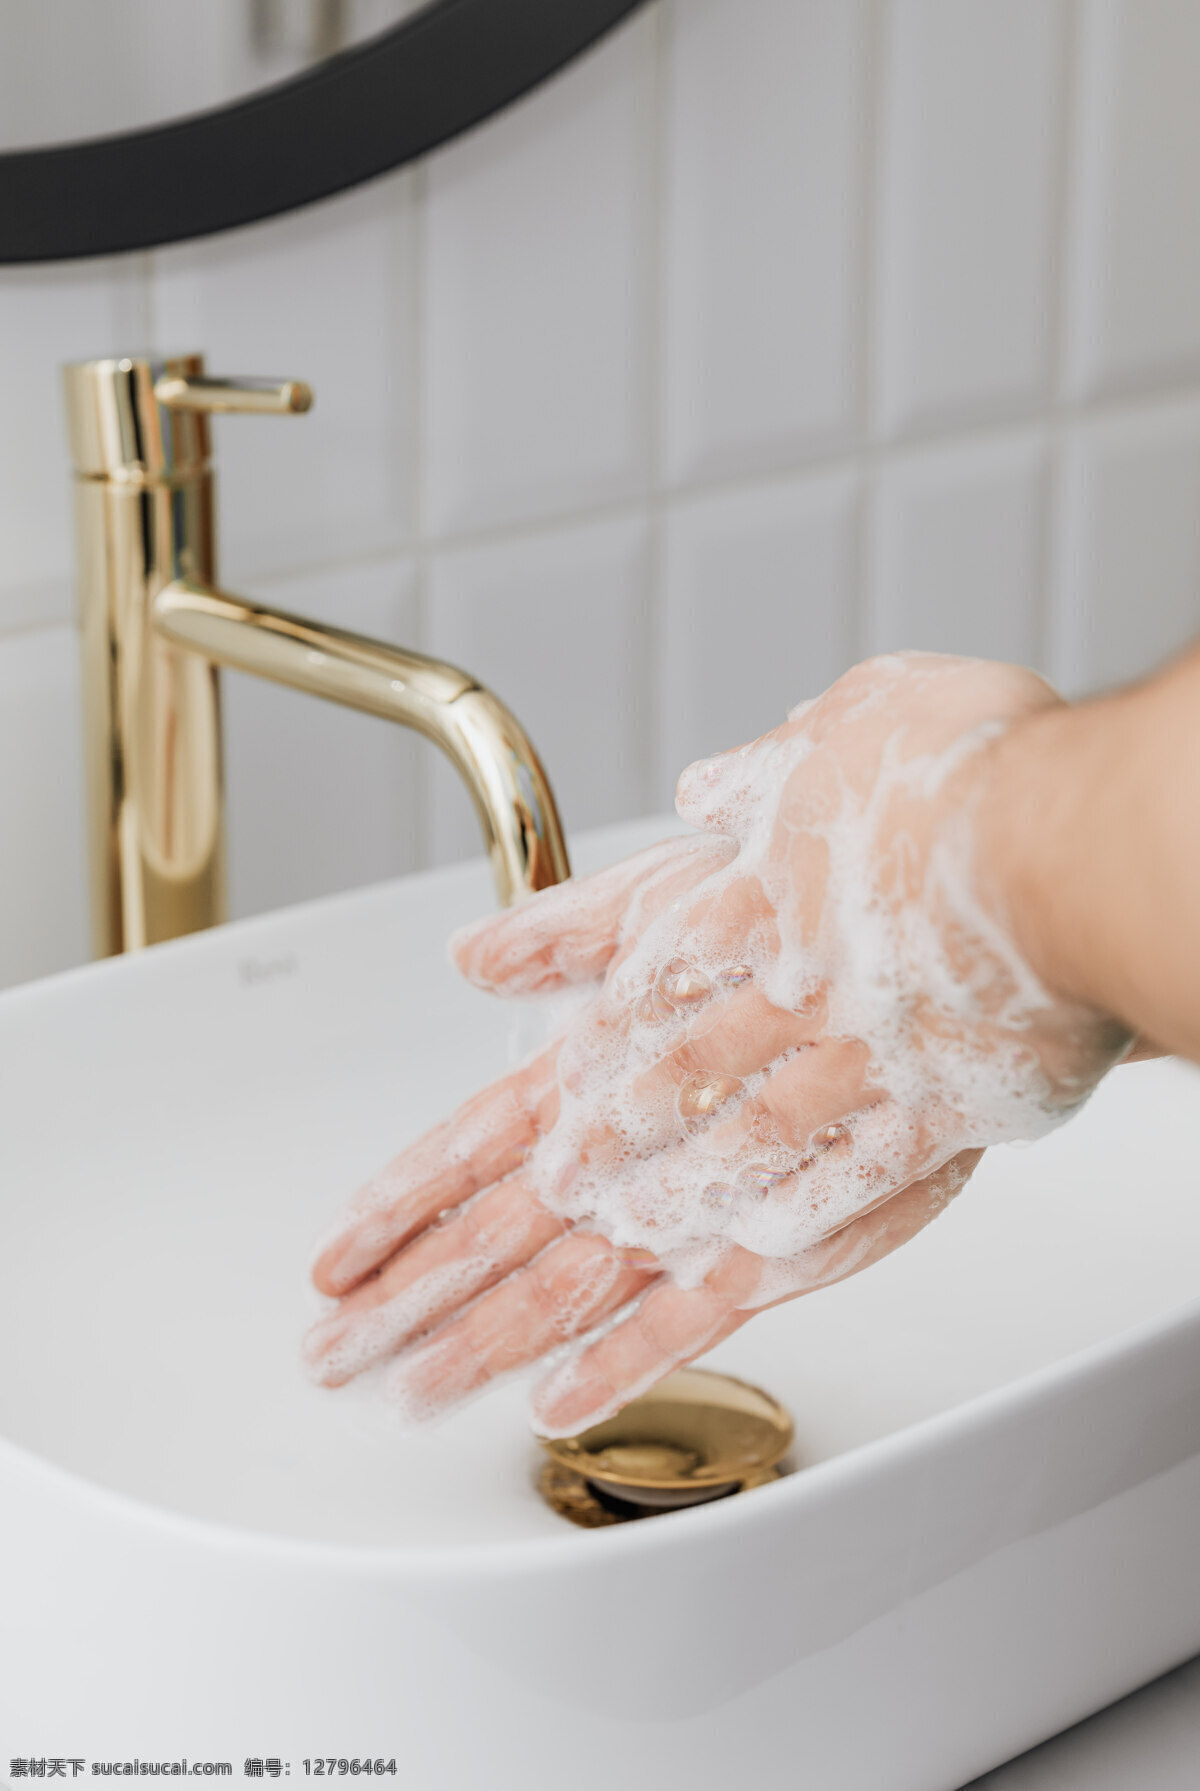 洗手图片 洗手 手 双手 洗 清洗 消毒 杀菌 人物图库 日常生活